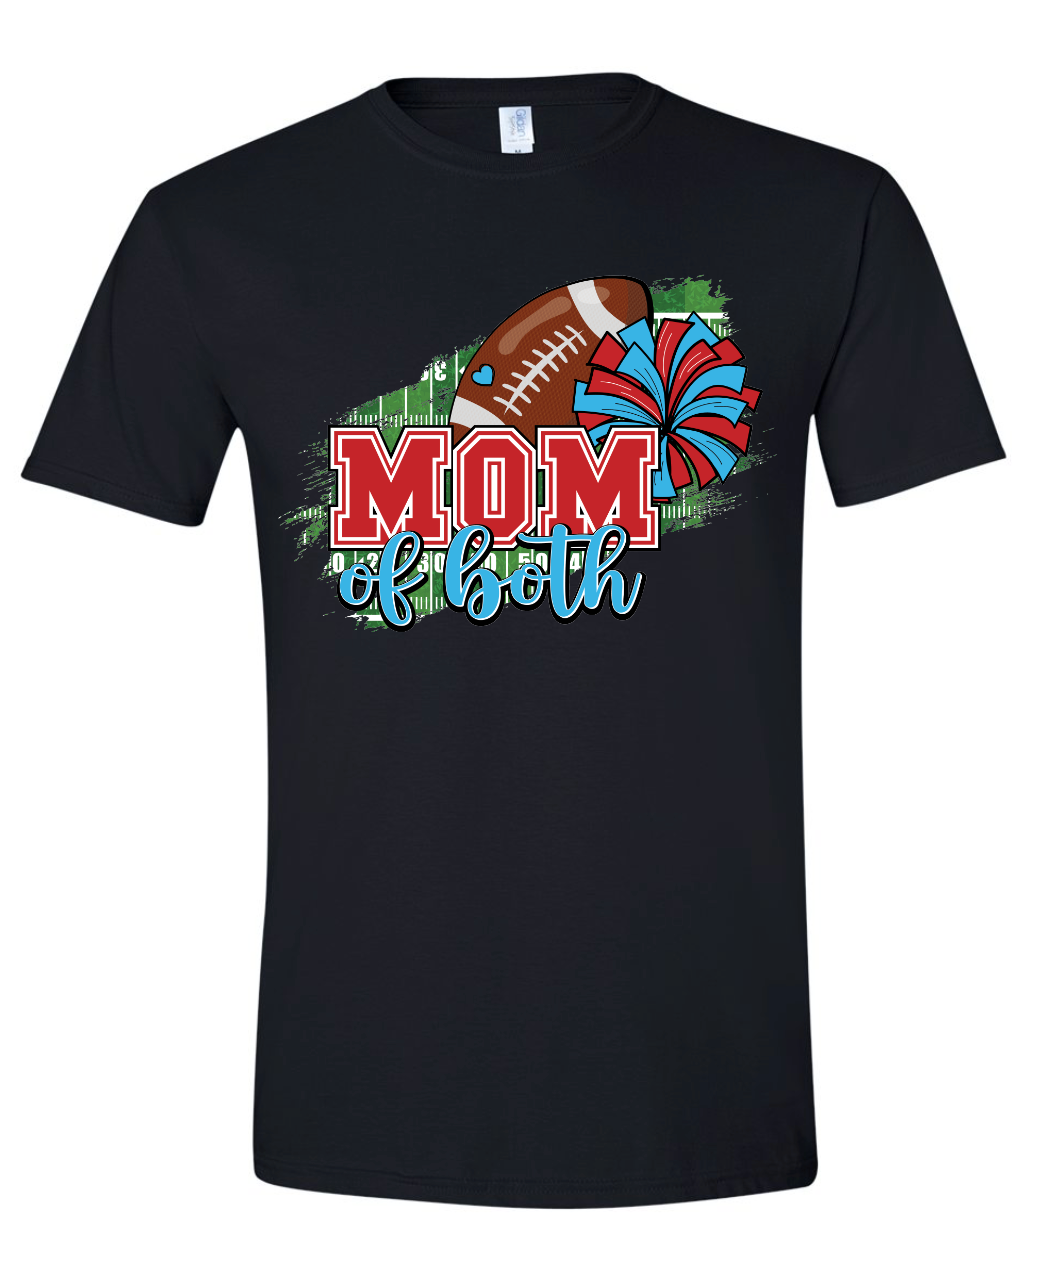 Football and Cheer Mom Gildan Softstyle